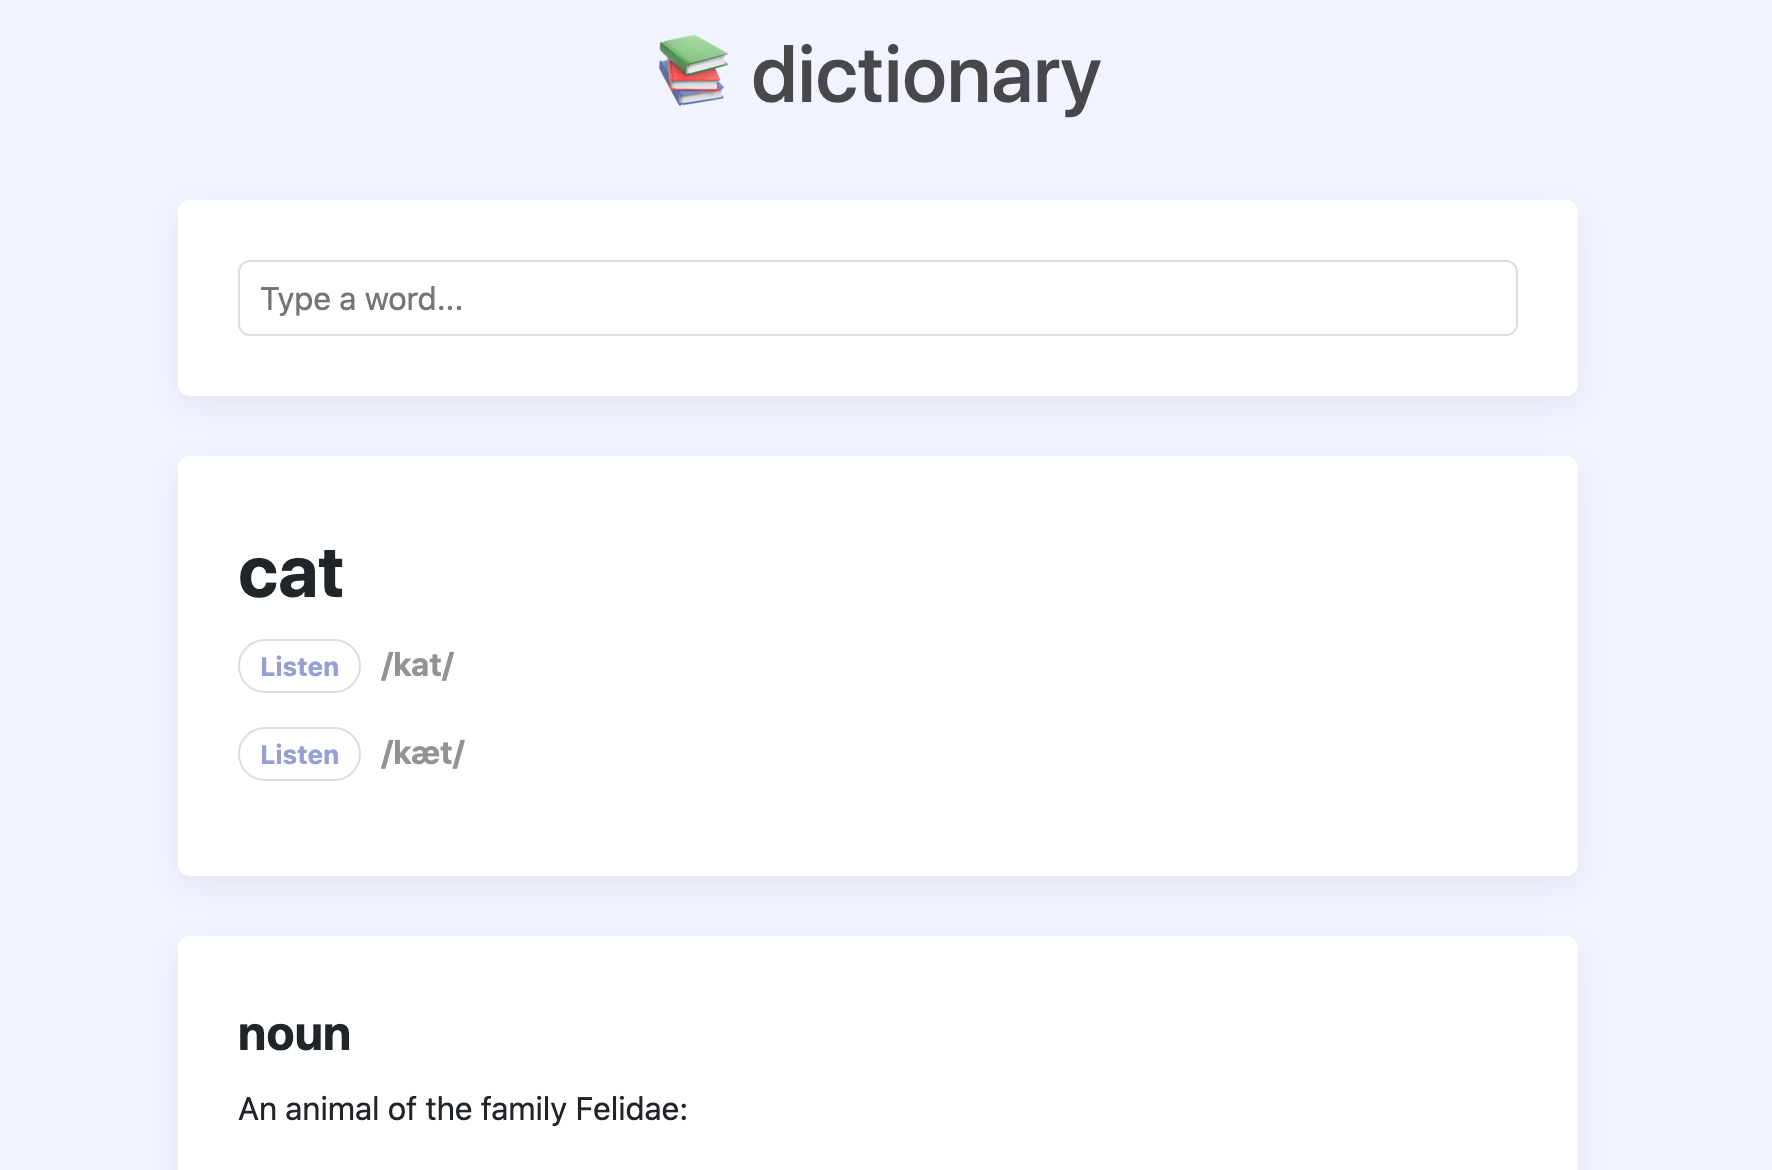 dictionary app